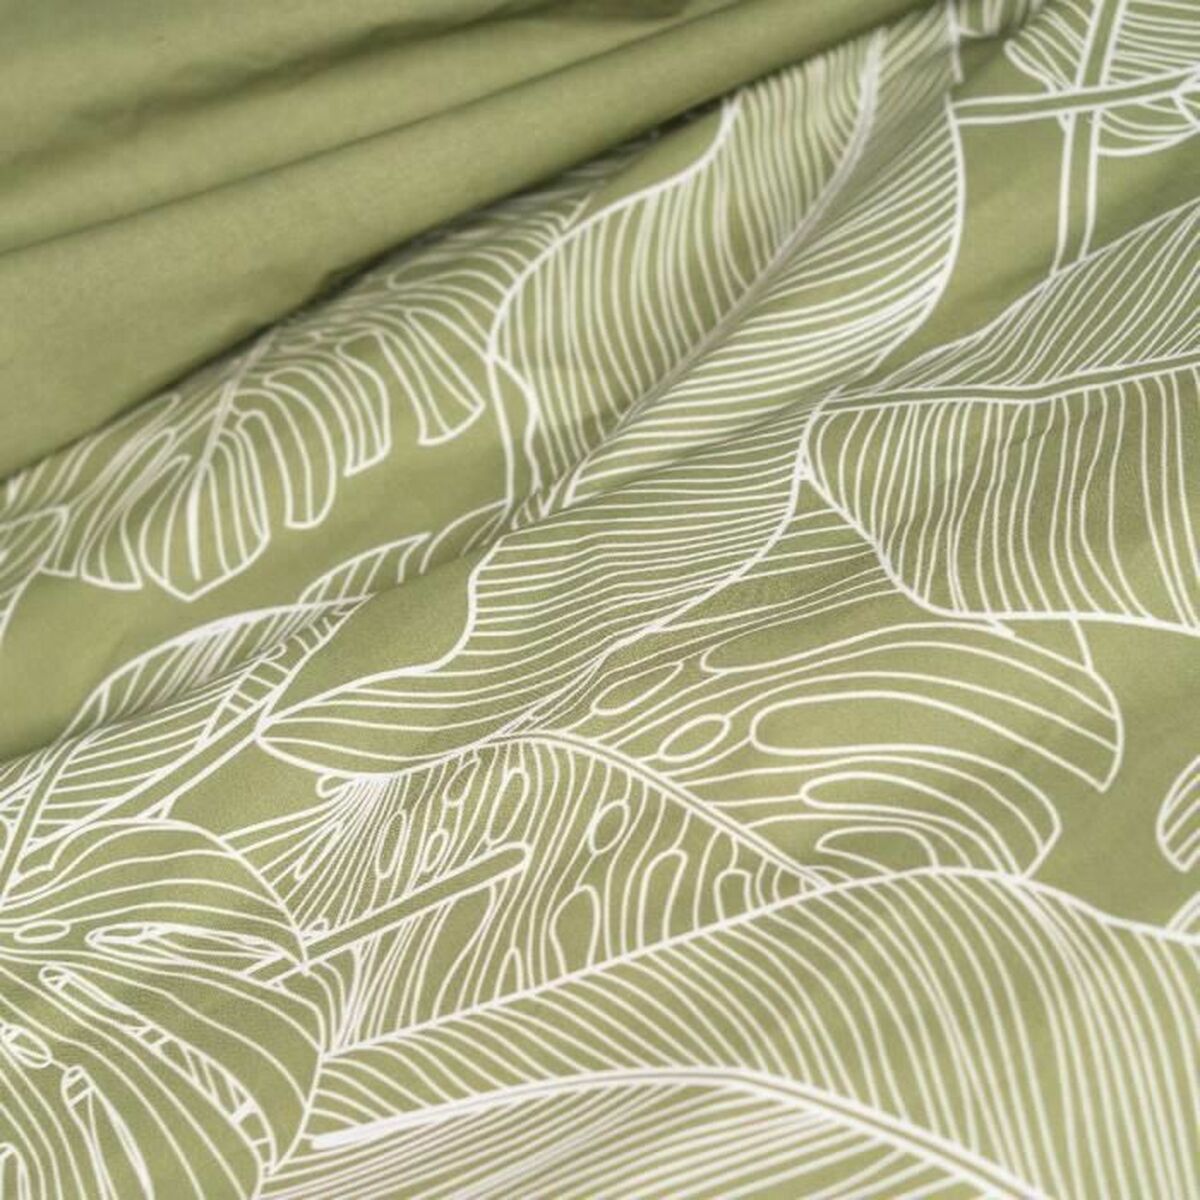 Bettdeckenbezug SUNSHINE  TODAY  Floral grün 240 x 260 cm